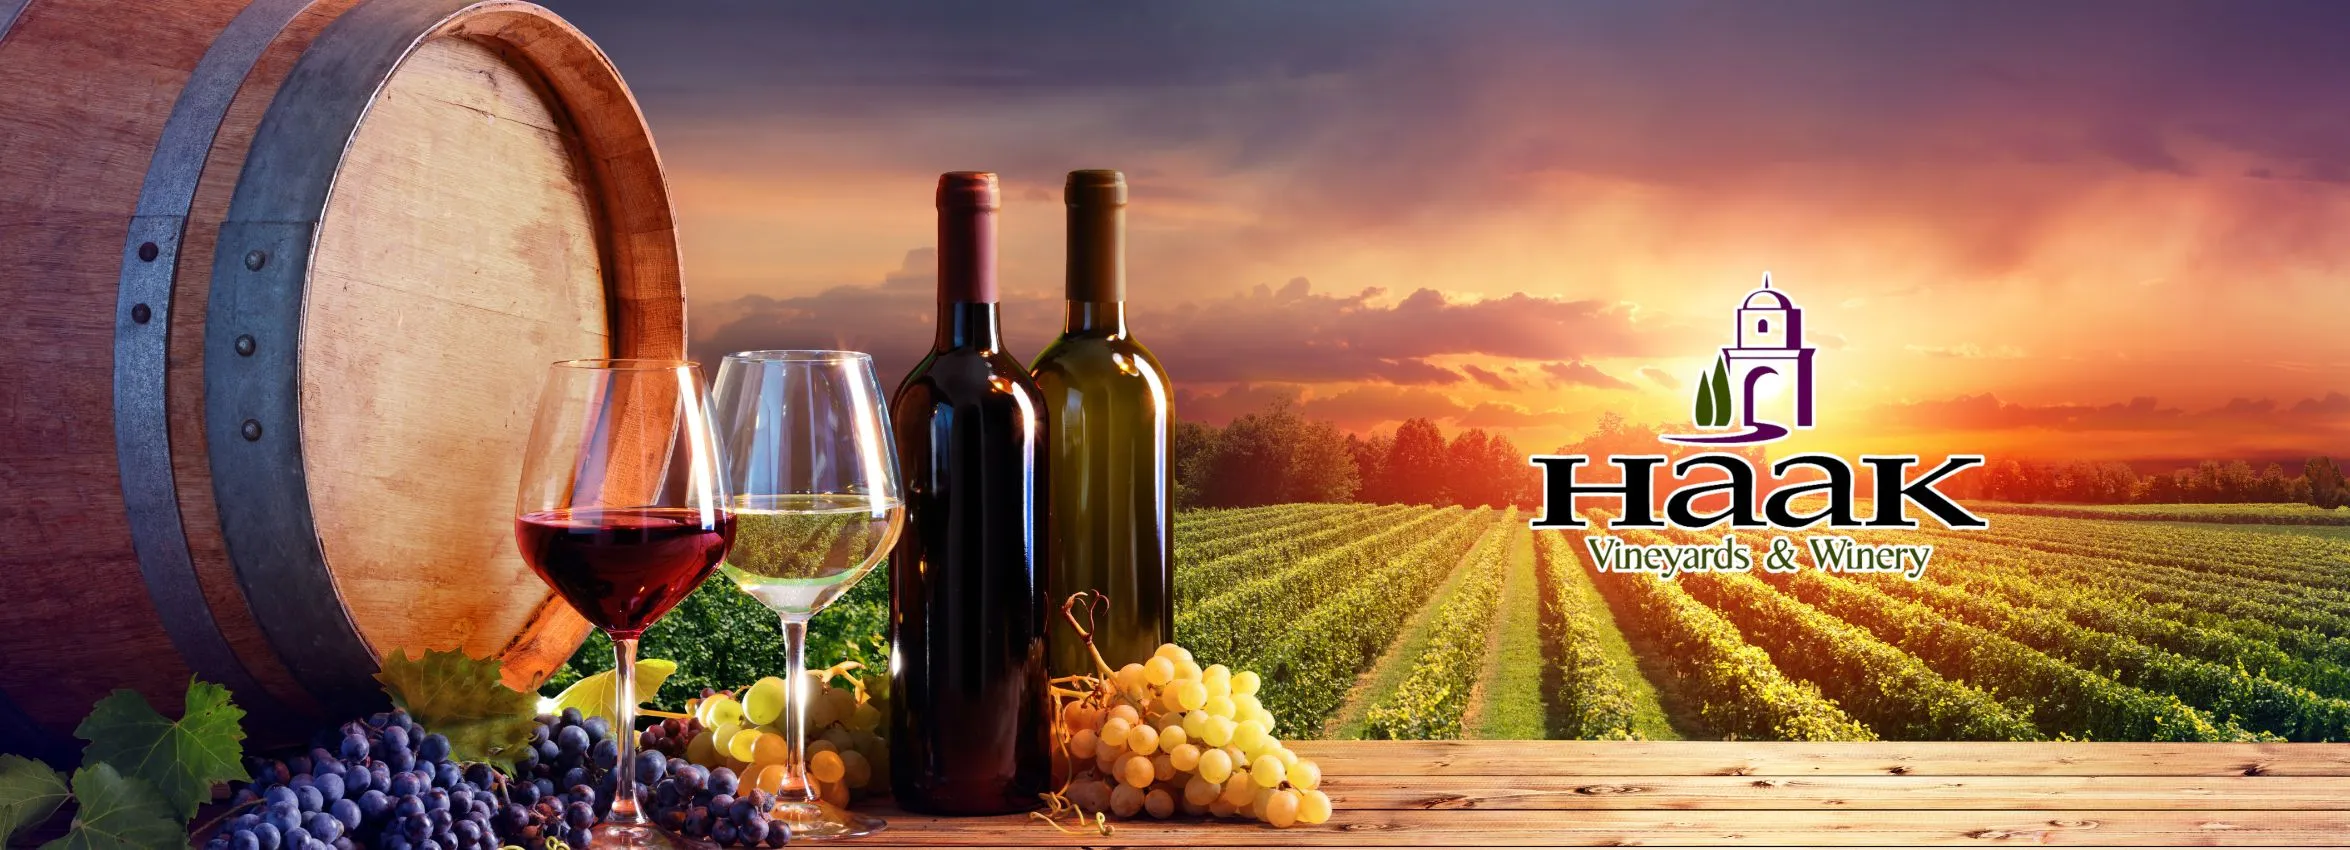 Haak-Vineyards-_-Winery_Desktop_ET-